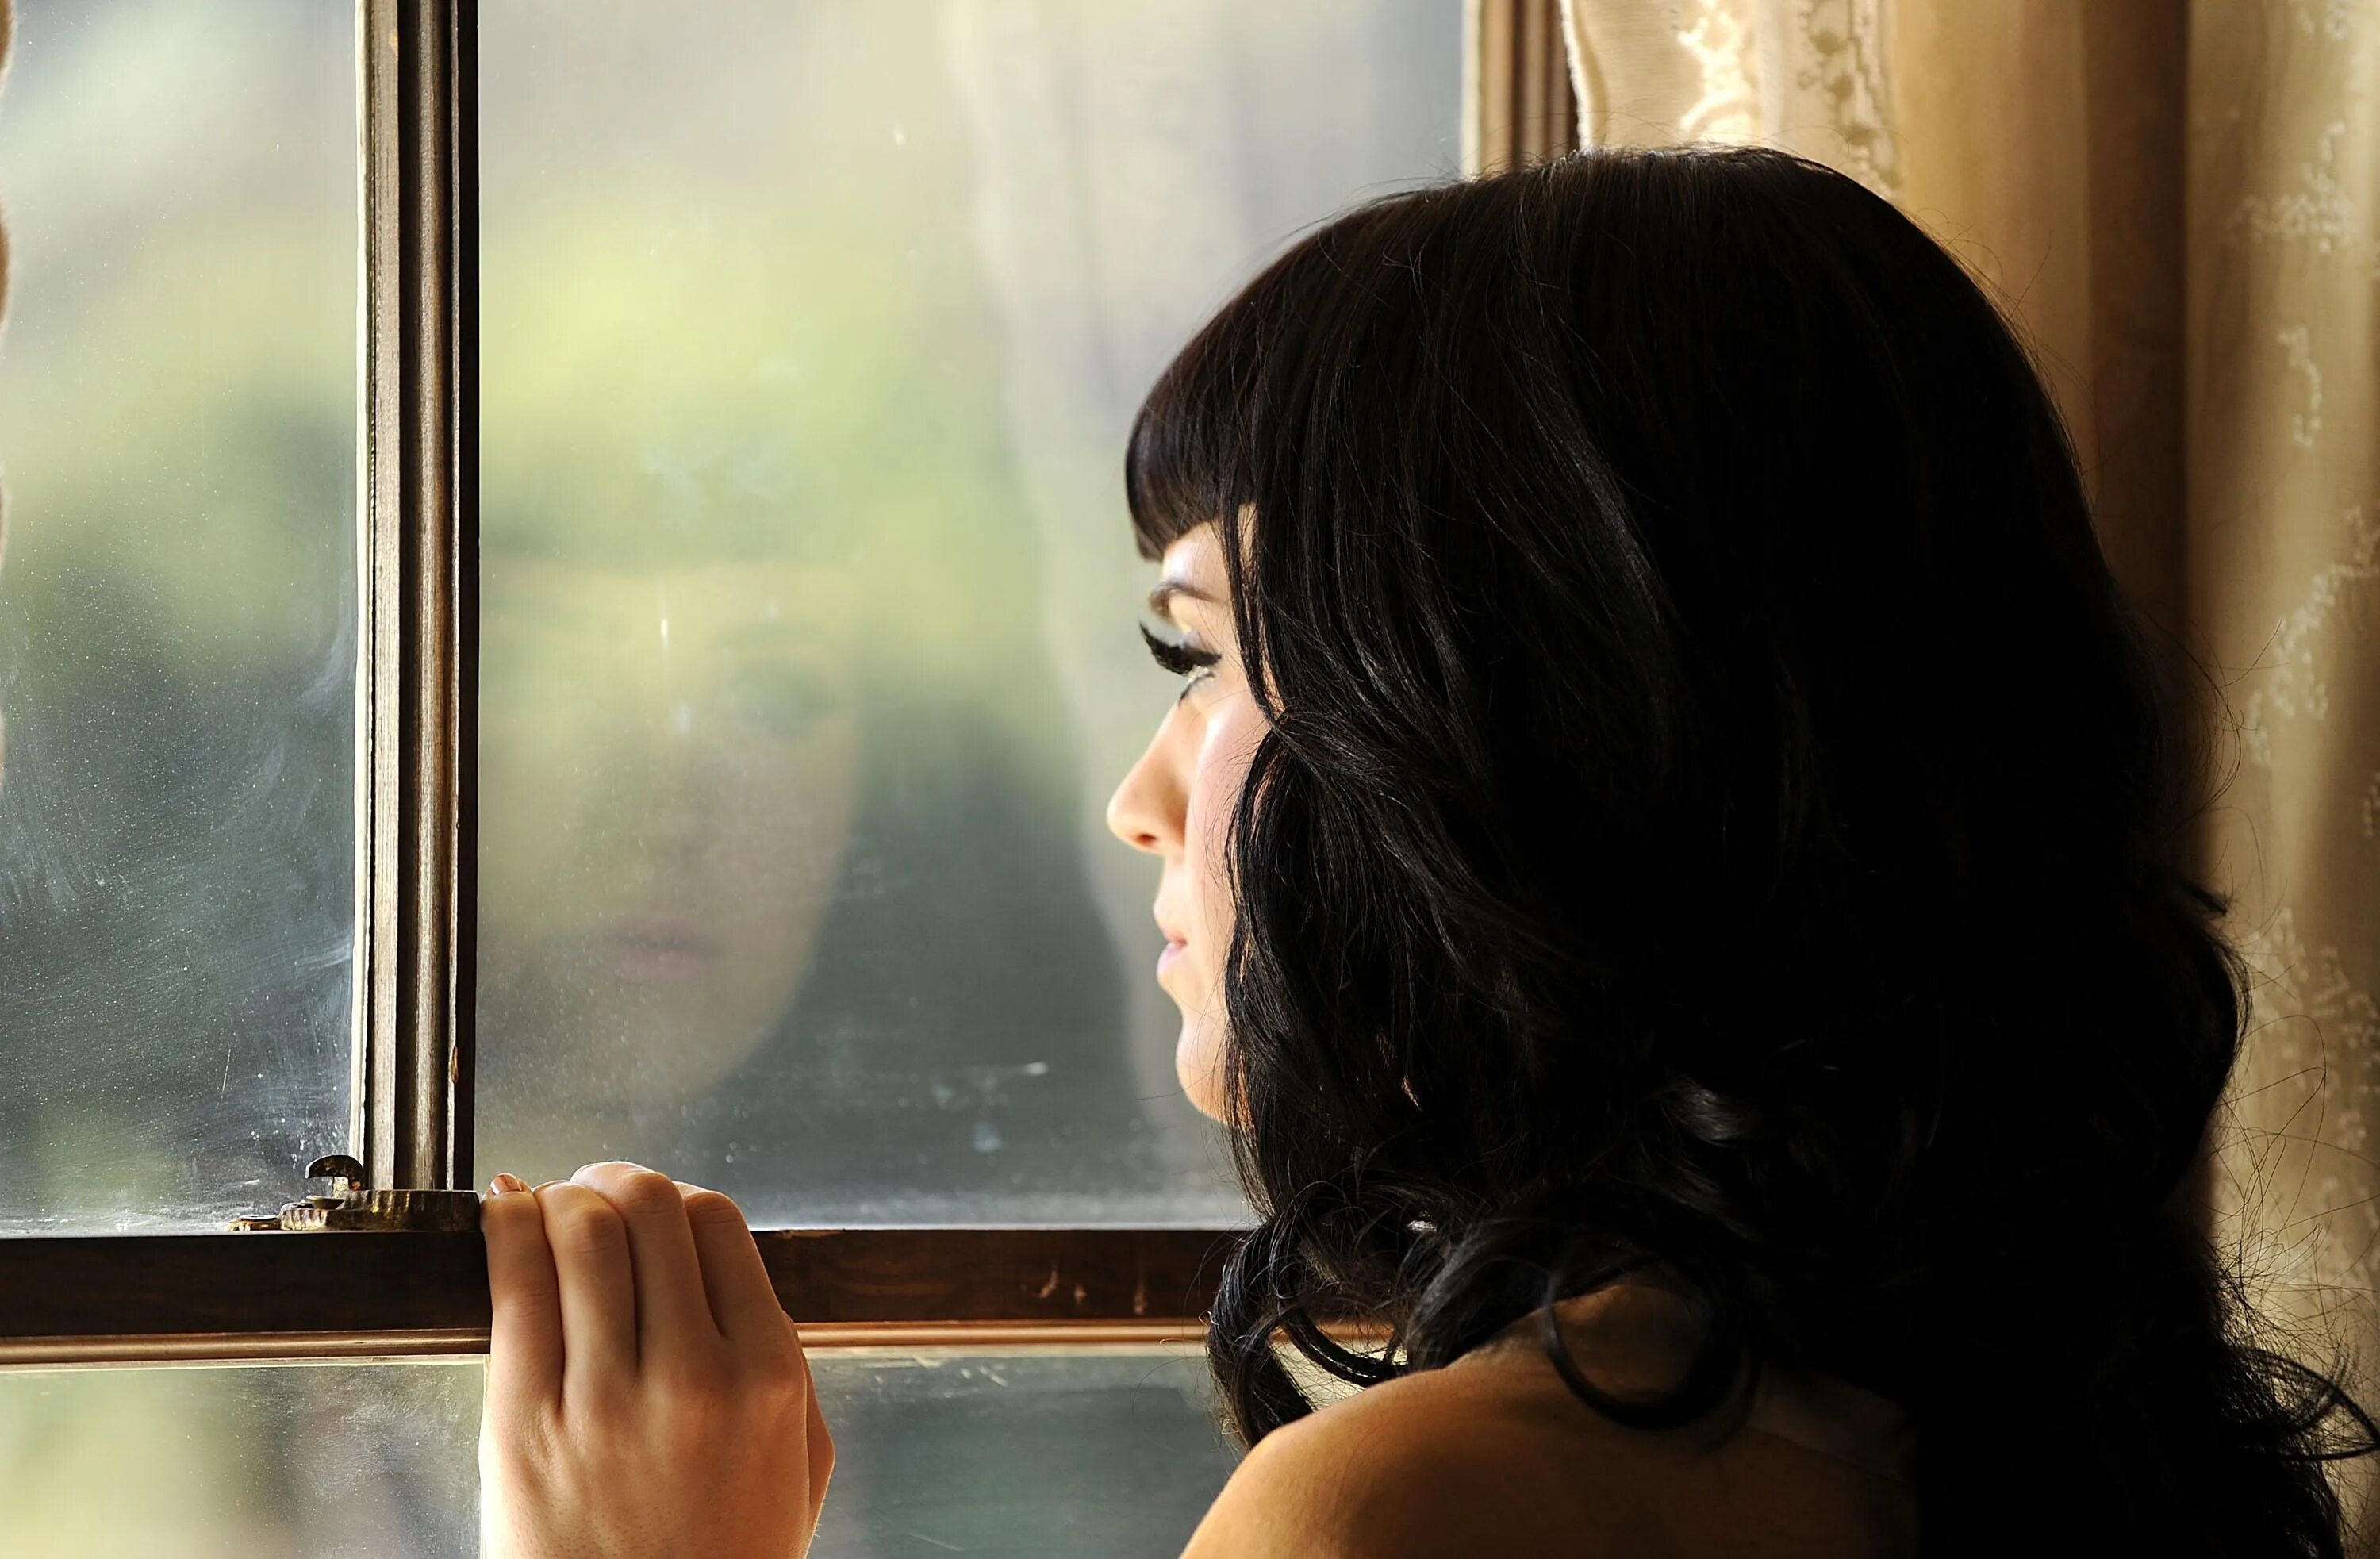 За окном девочка кто поет. Женщина в окне. Женщина возле окна. Отражение девушки в окне. Девушка ждет.